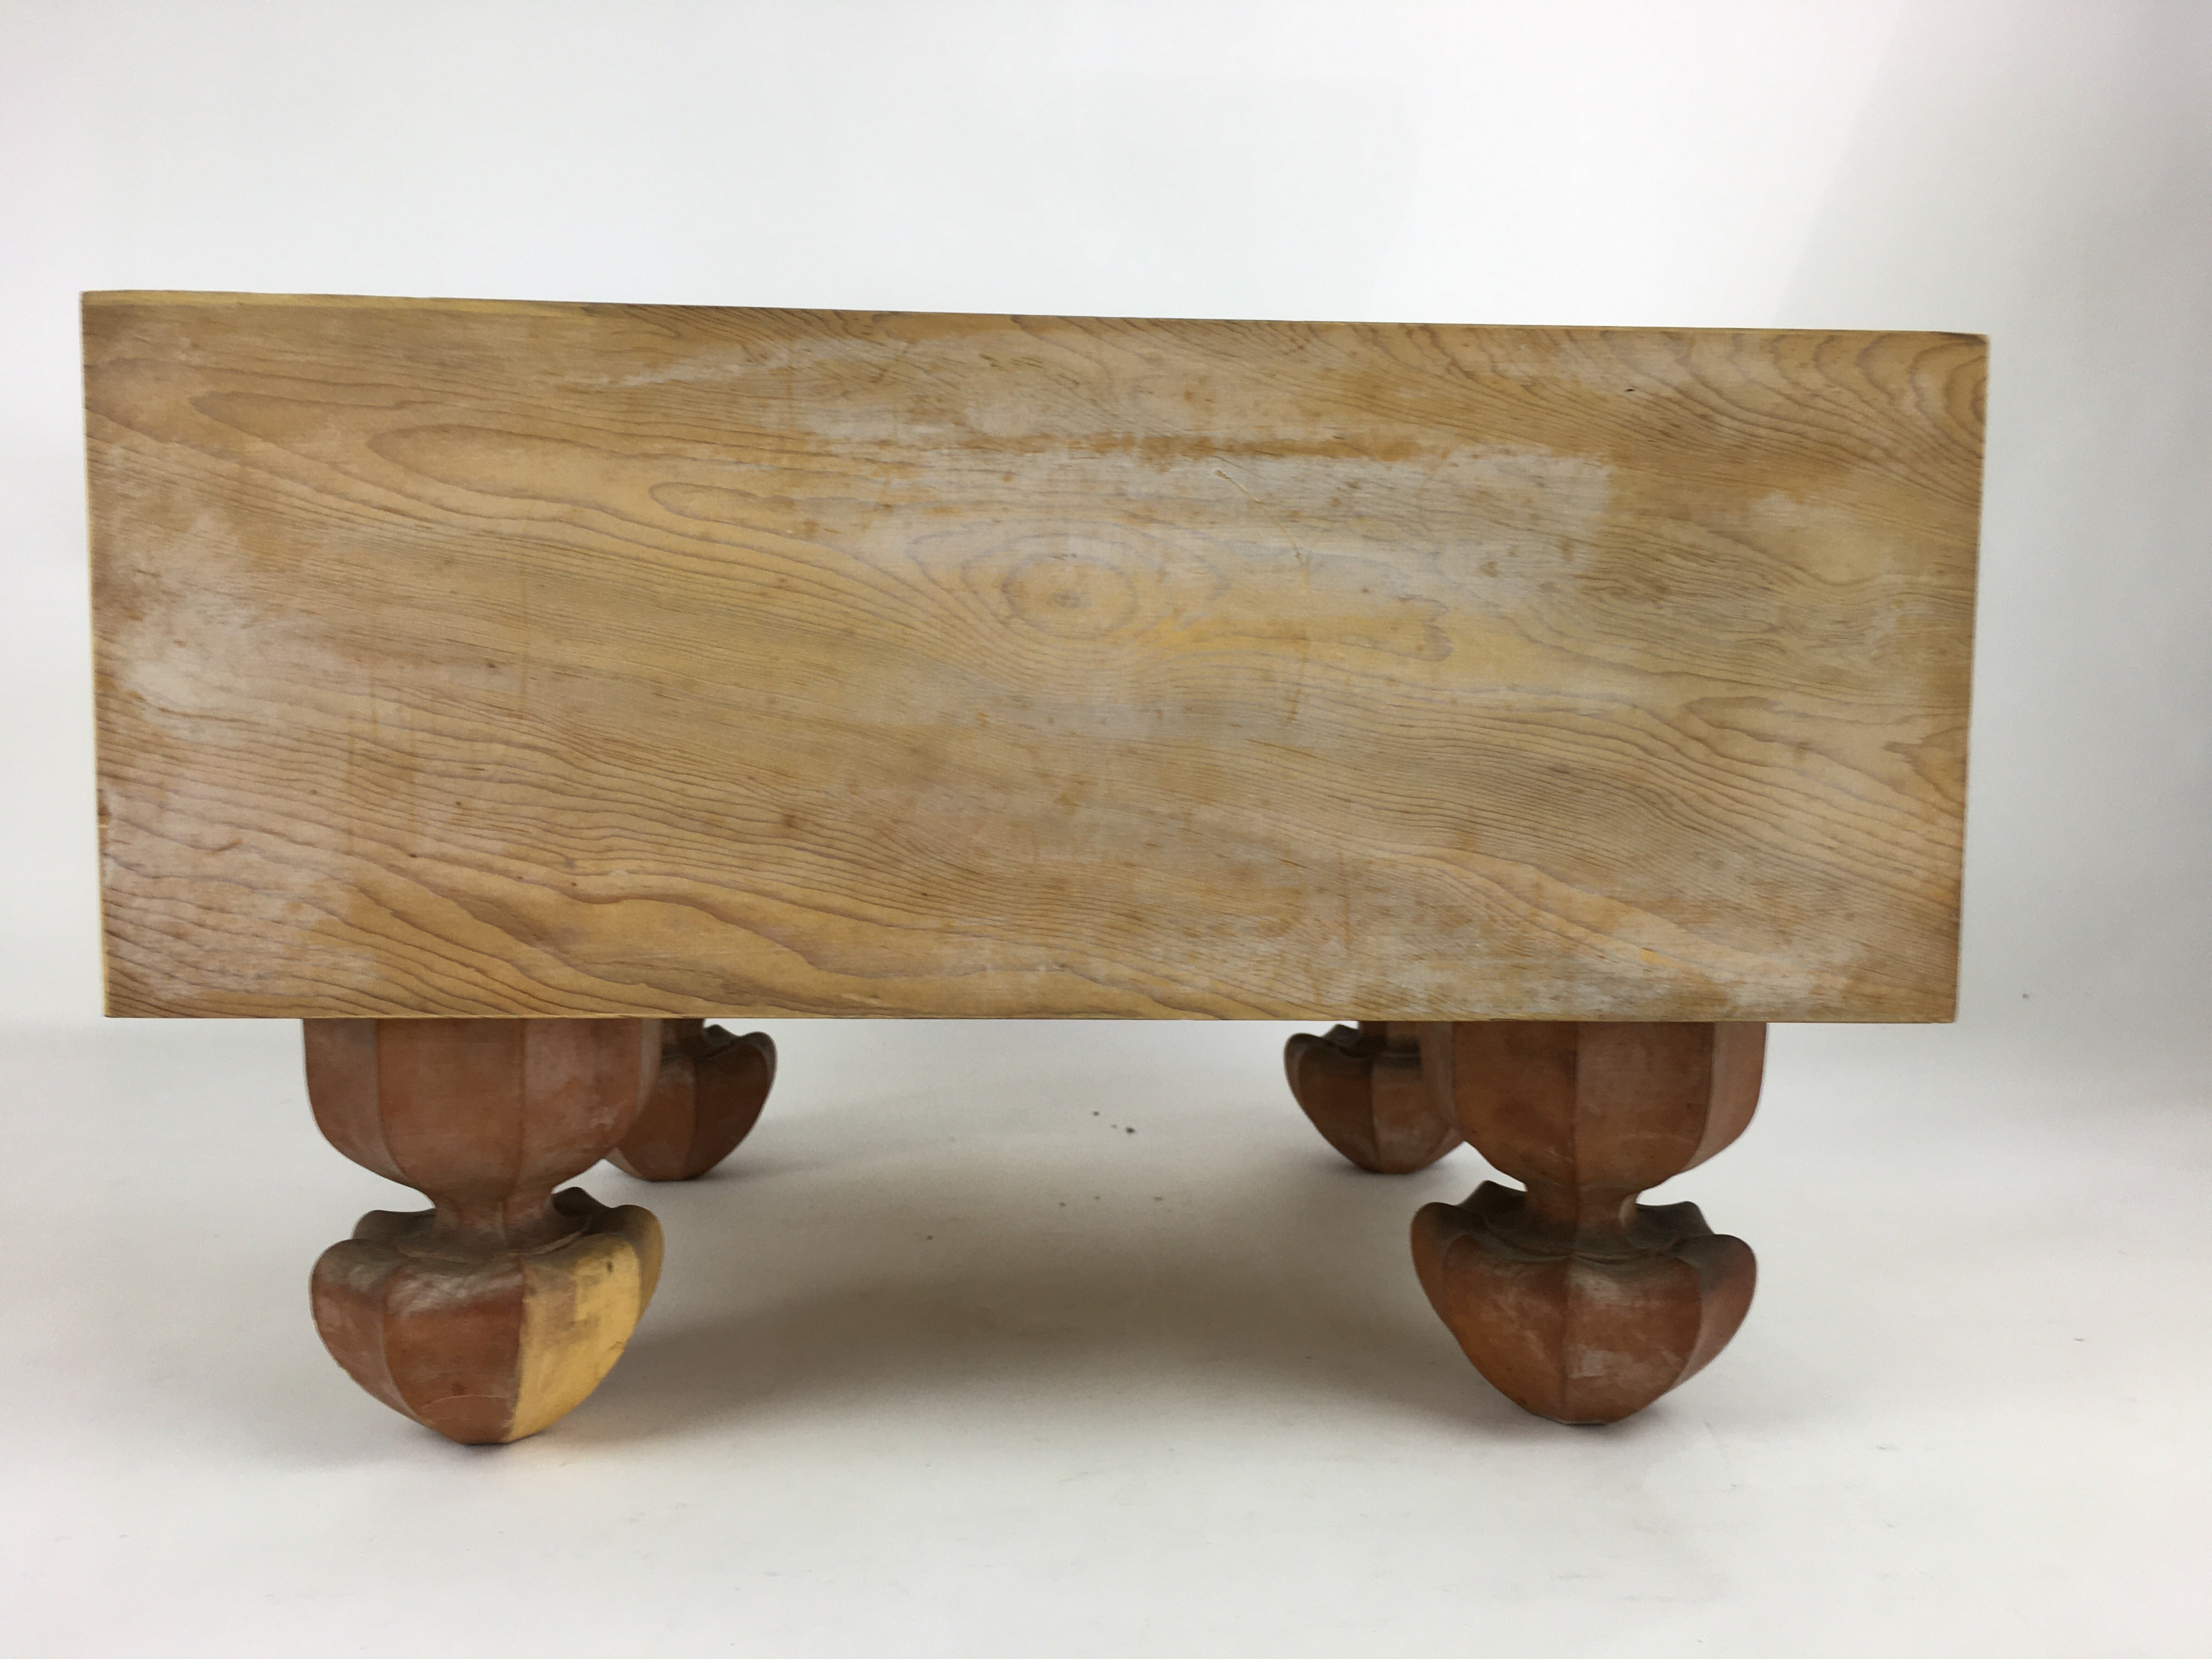 Japanese Wood Go Board Vtg Table Game Goban Leg Heso Igo 19X19 Grid GB57